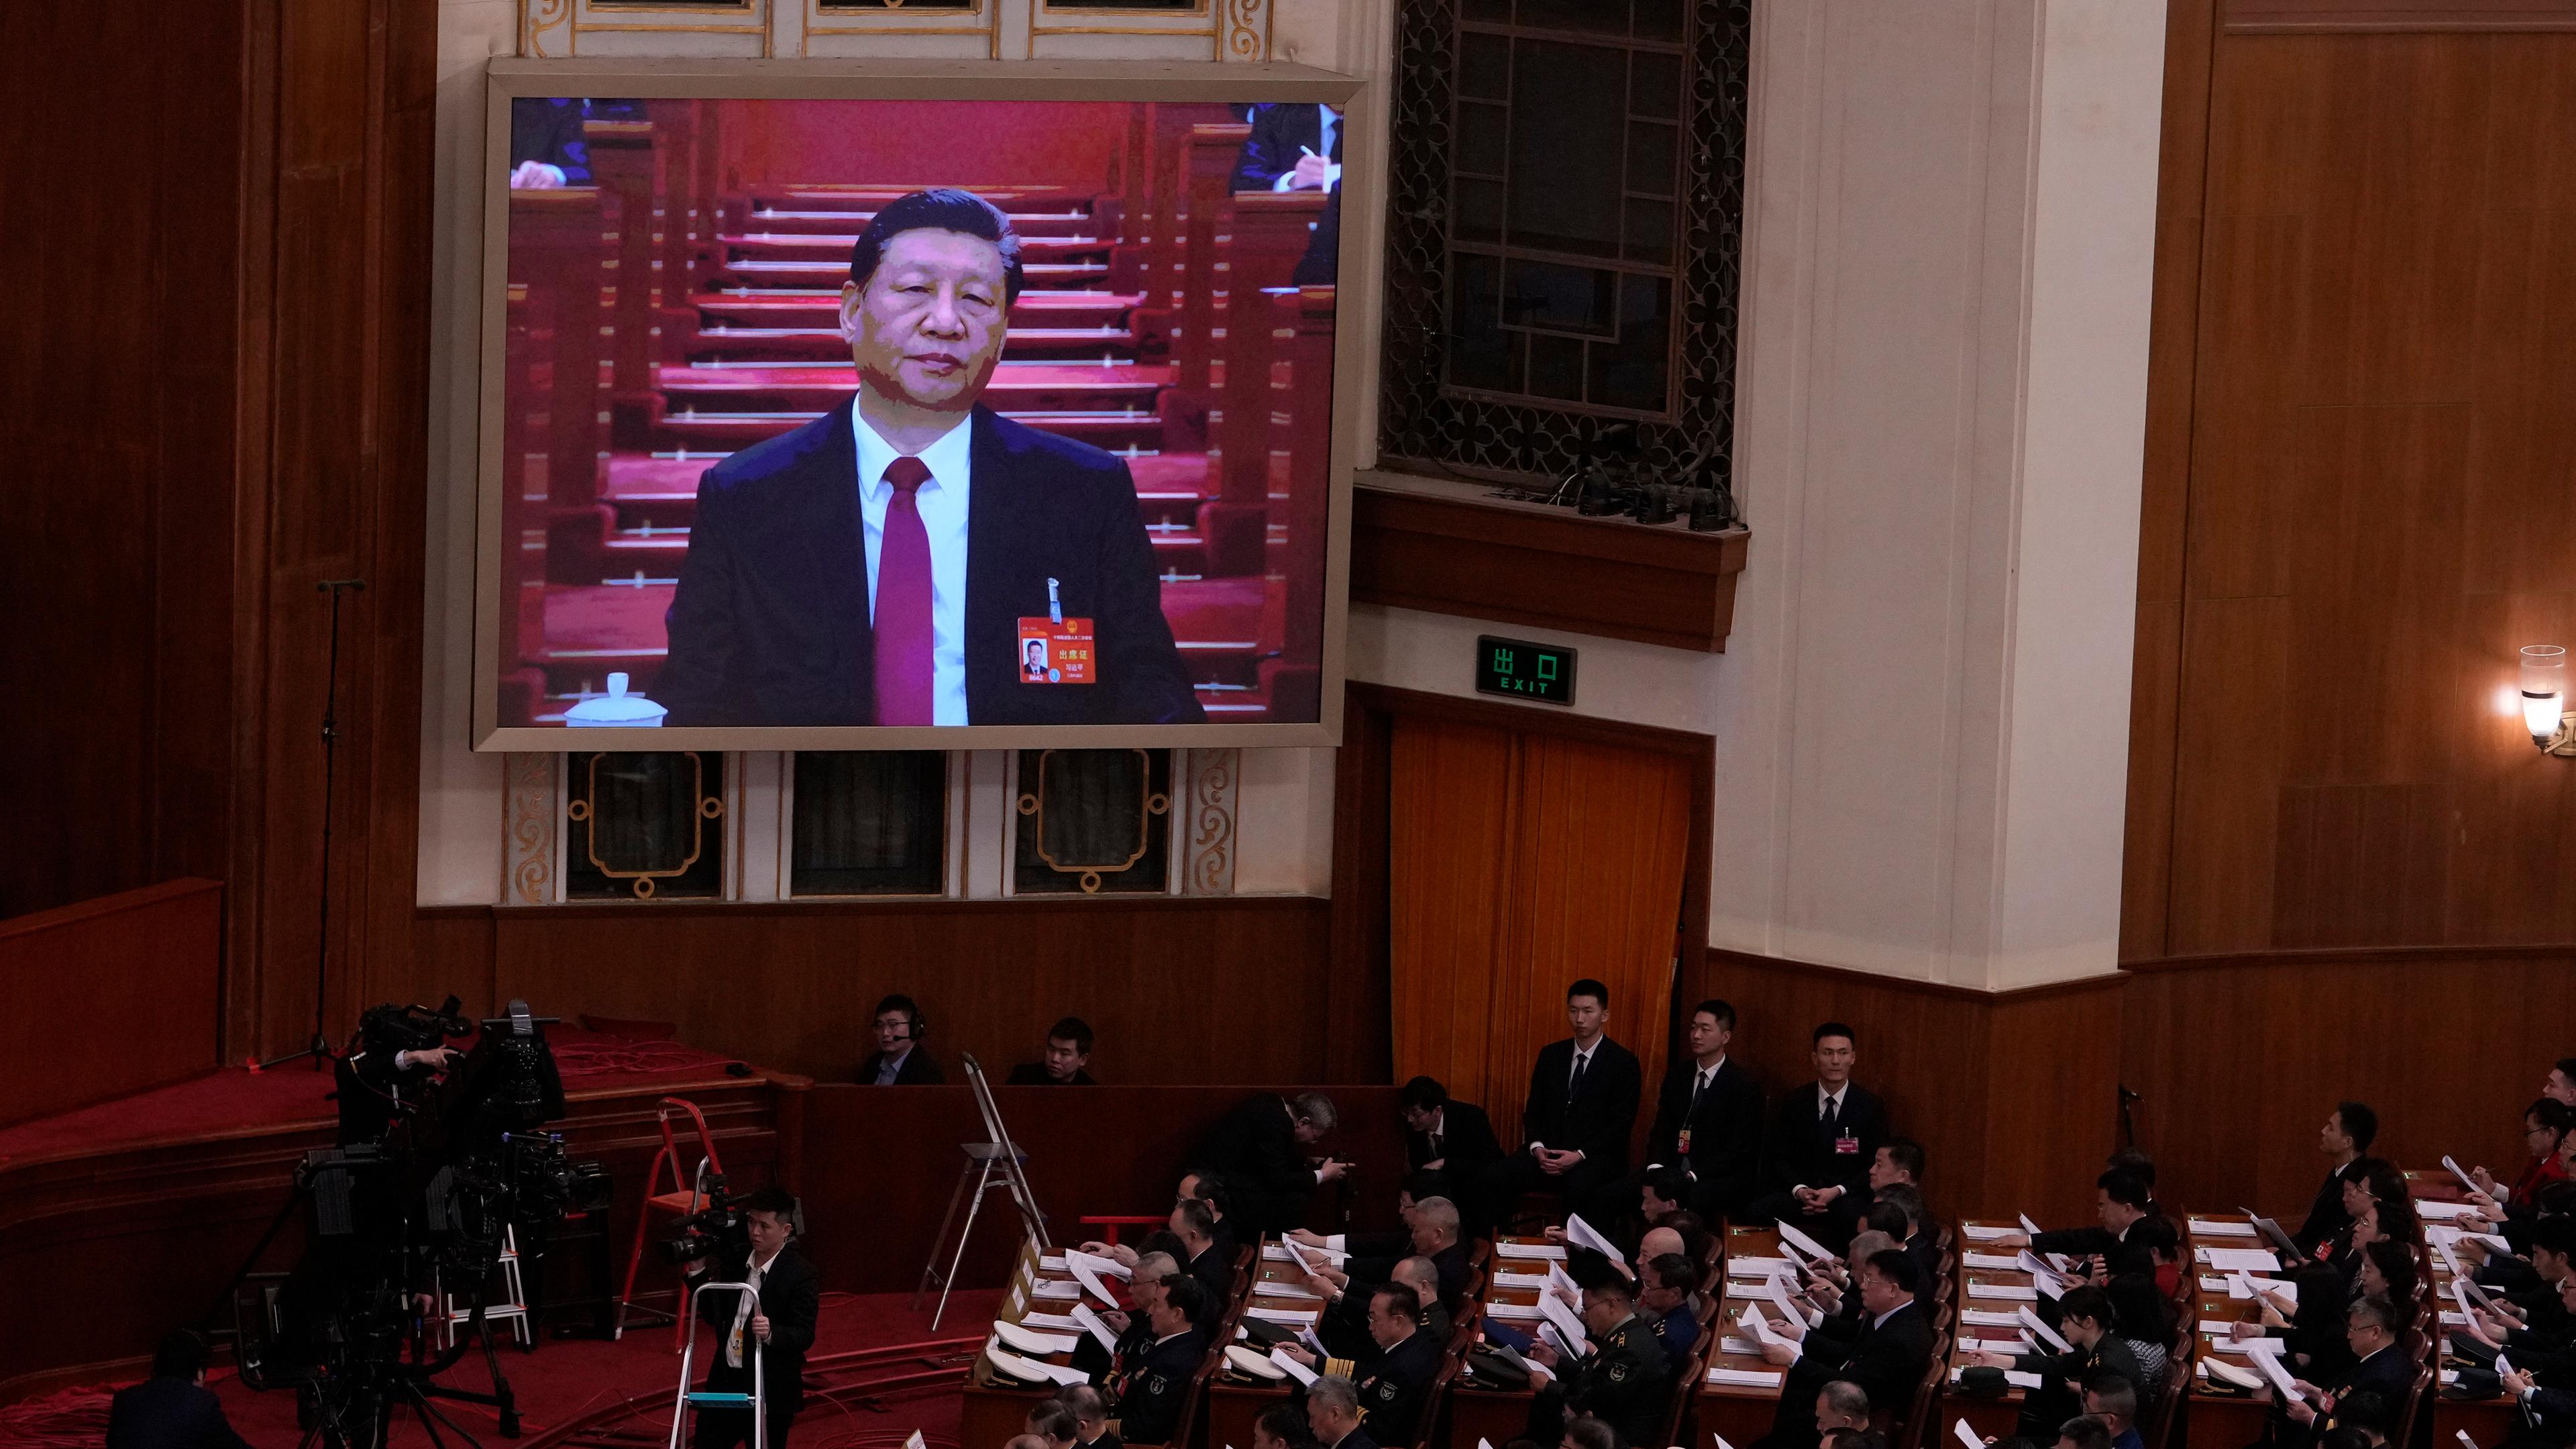 Xi Jinping, Präsident von China, (auf dem Bildschirm) hört der Eröffnungsrede von Li, Ministerpräsident von China, während der Eröffnungssitzung des Nationalen Volkskongresses (NVK) in der Großen Halle des Volkes in Peking, China, zu. 